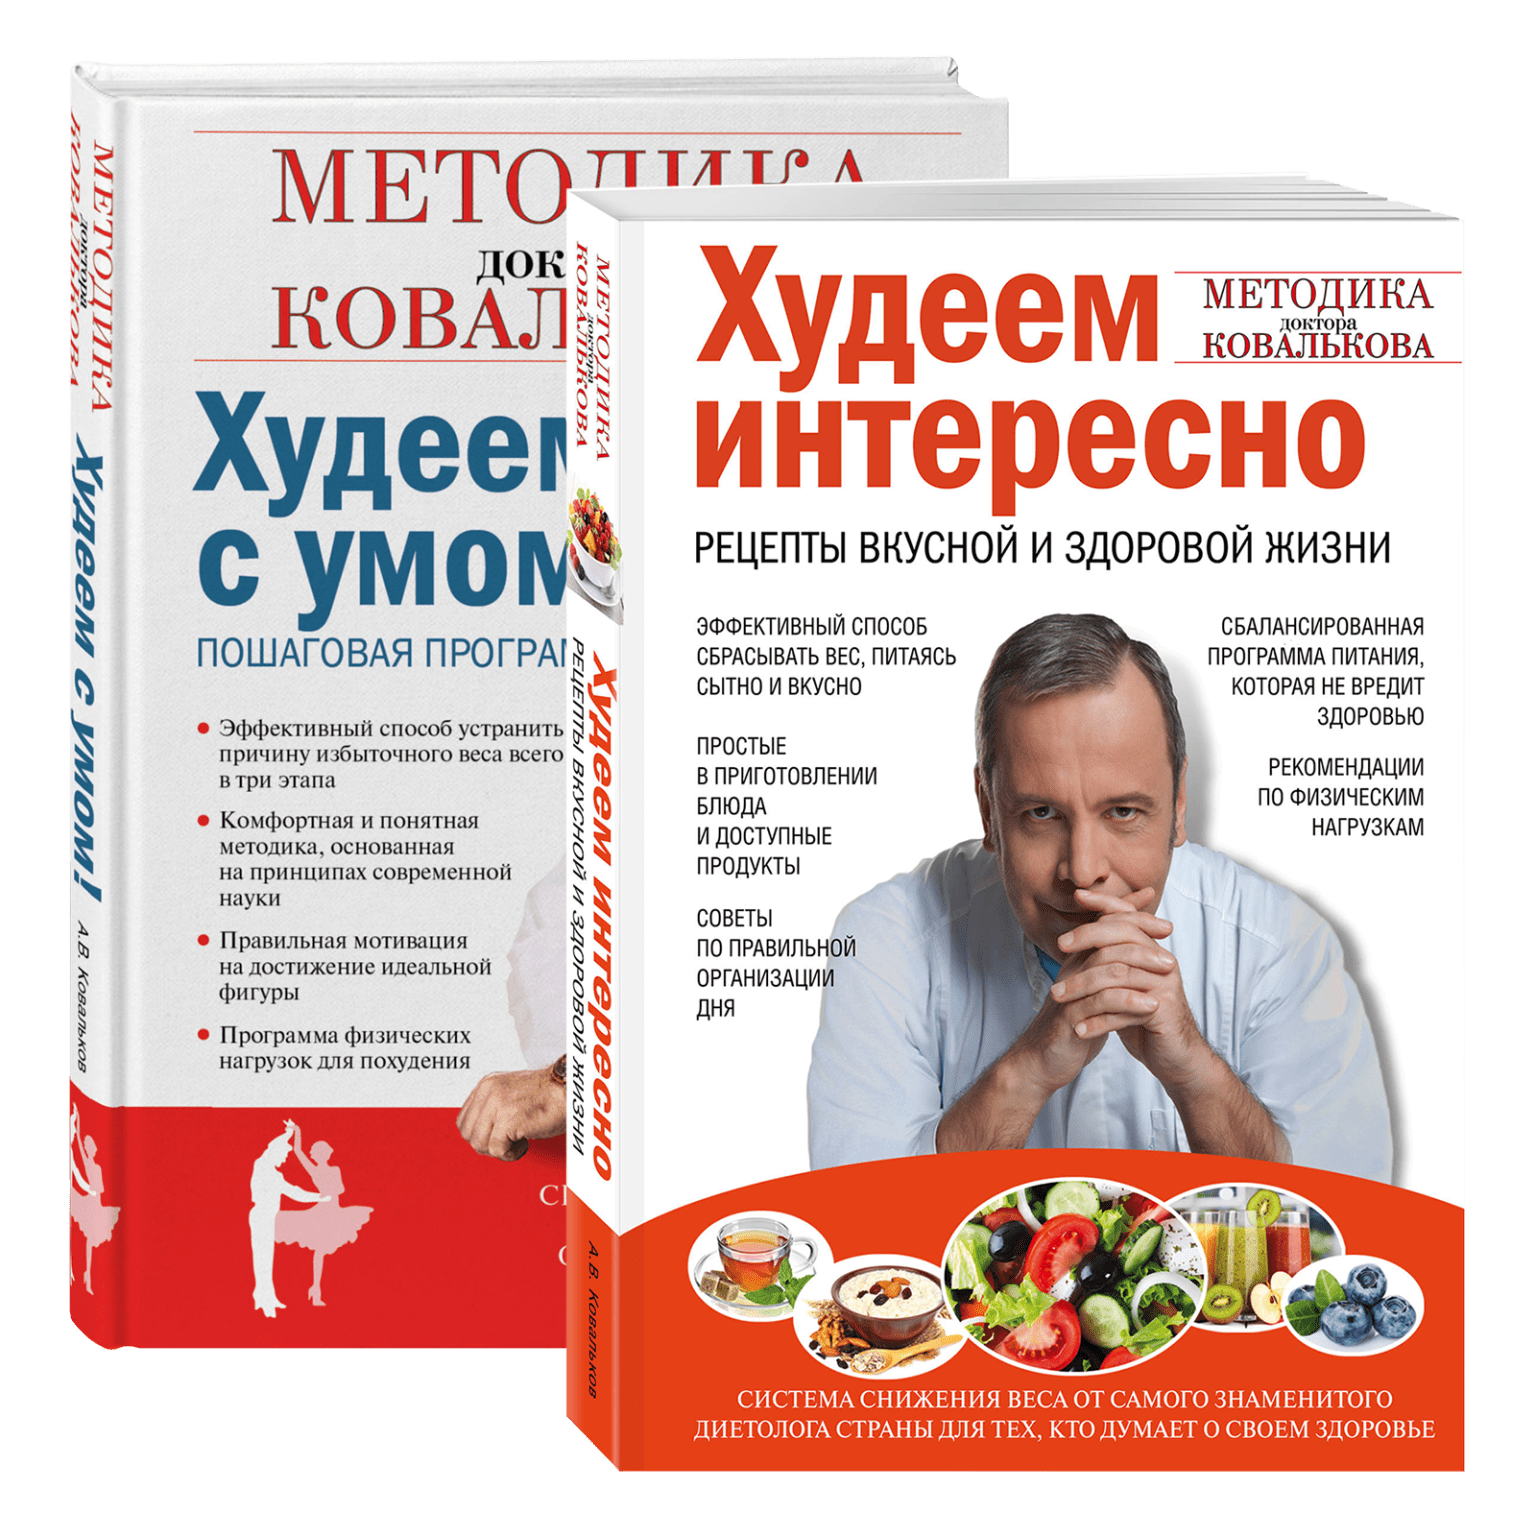 Супы от диетолога ковалькова